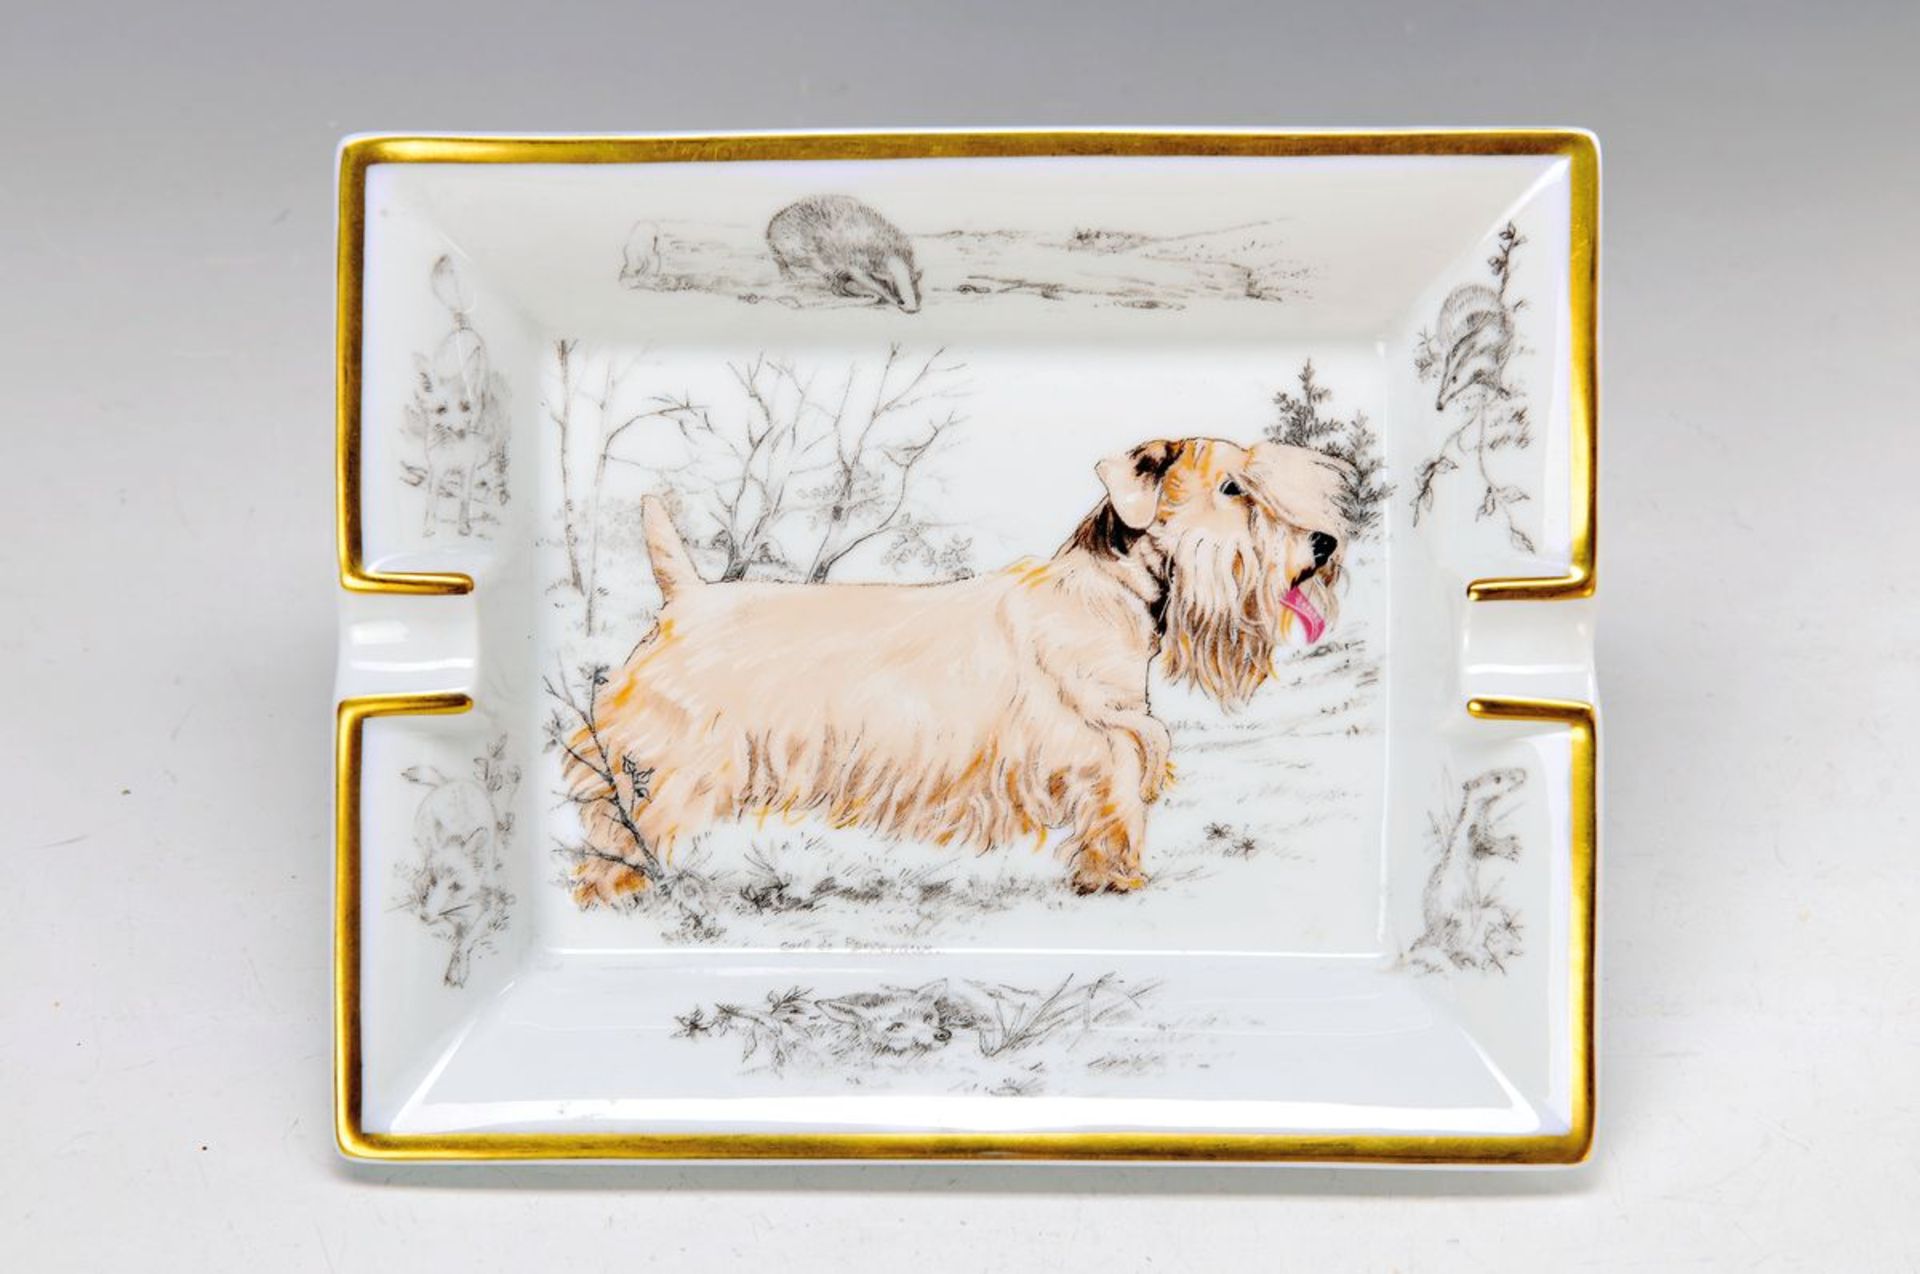 ash-tray, Hèrmes Paris, porcelain, with dogs motif, gold rim, approx. 3.5x19x16cm